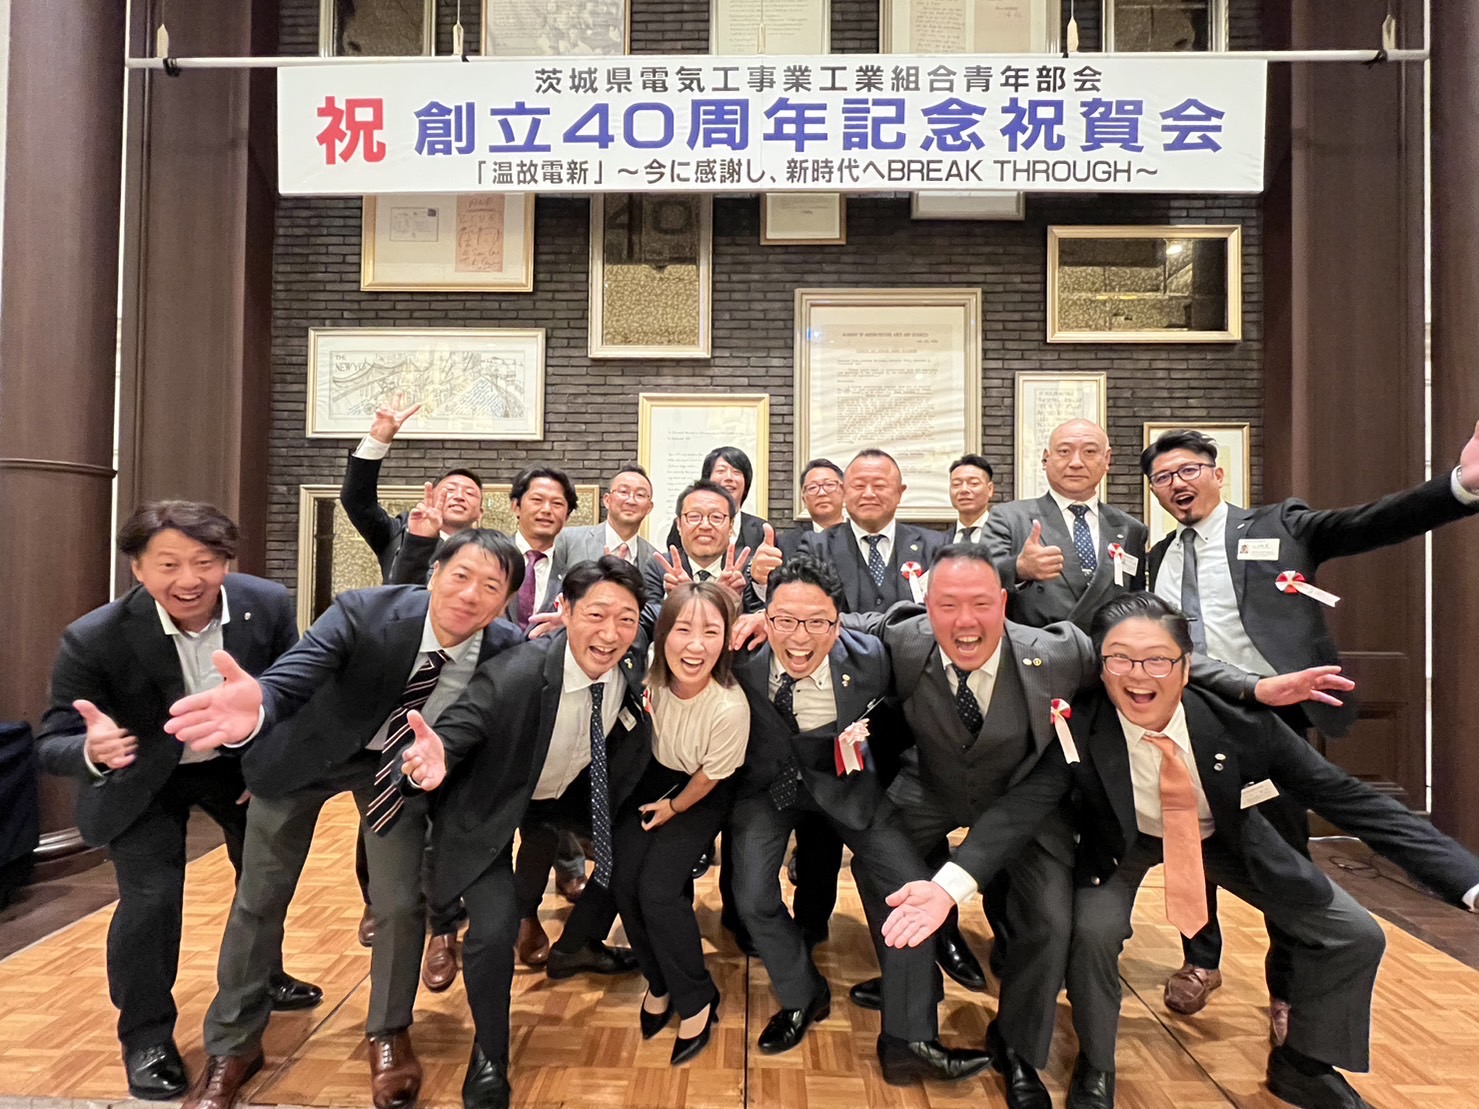 茨城県電気工事業工業組合青年部会40周年記念式典に参加のイメージ